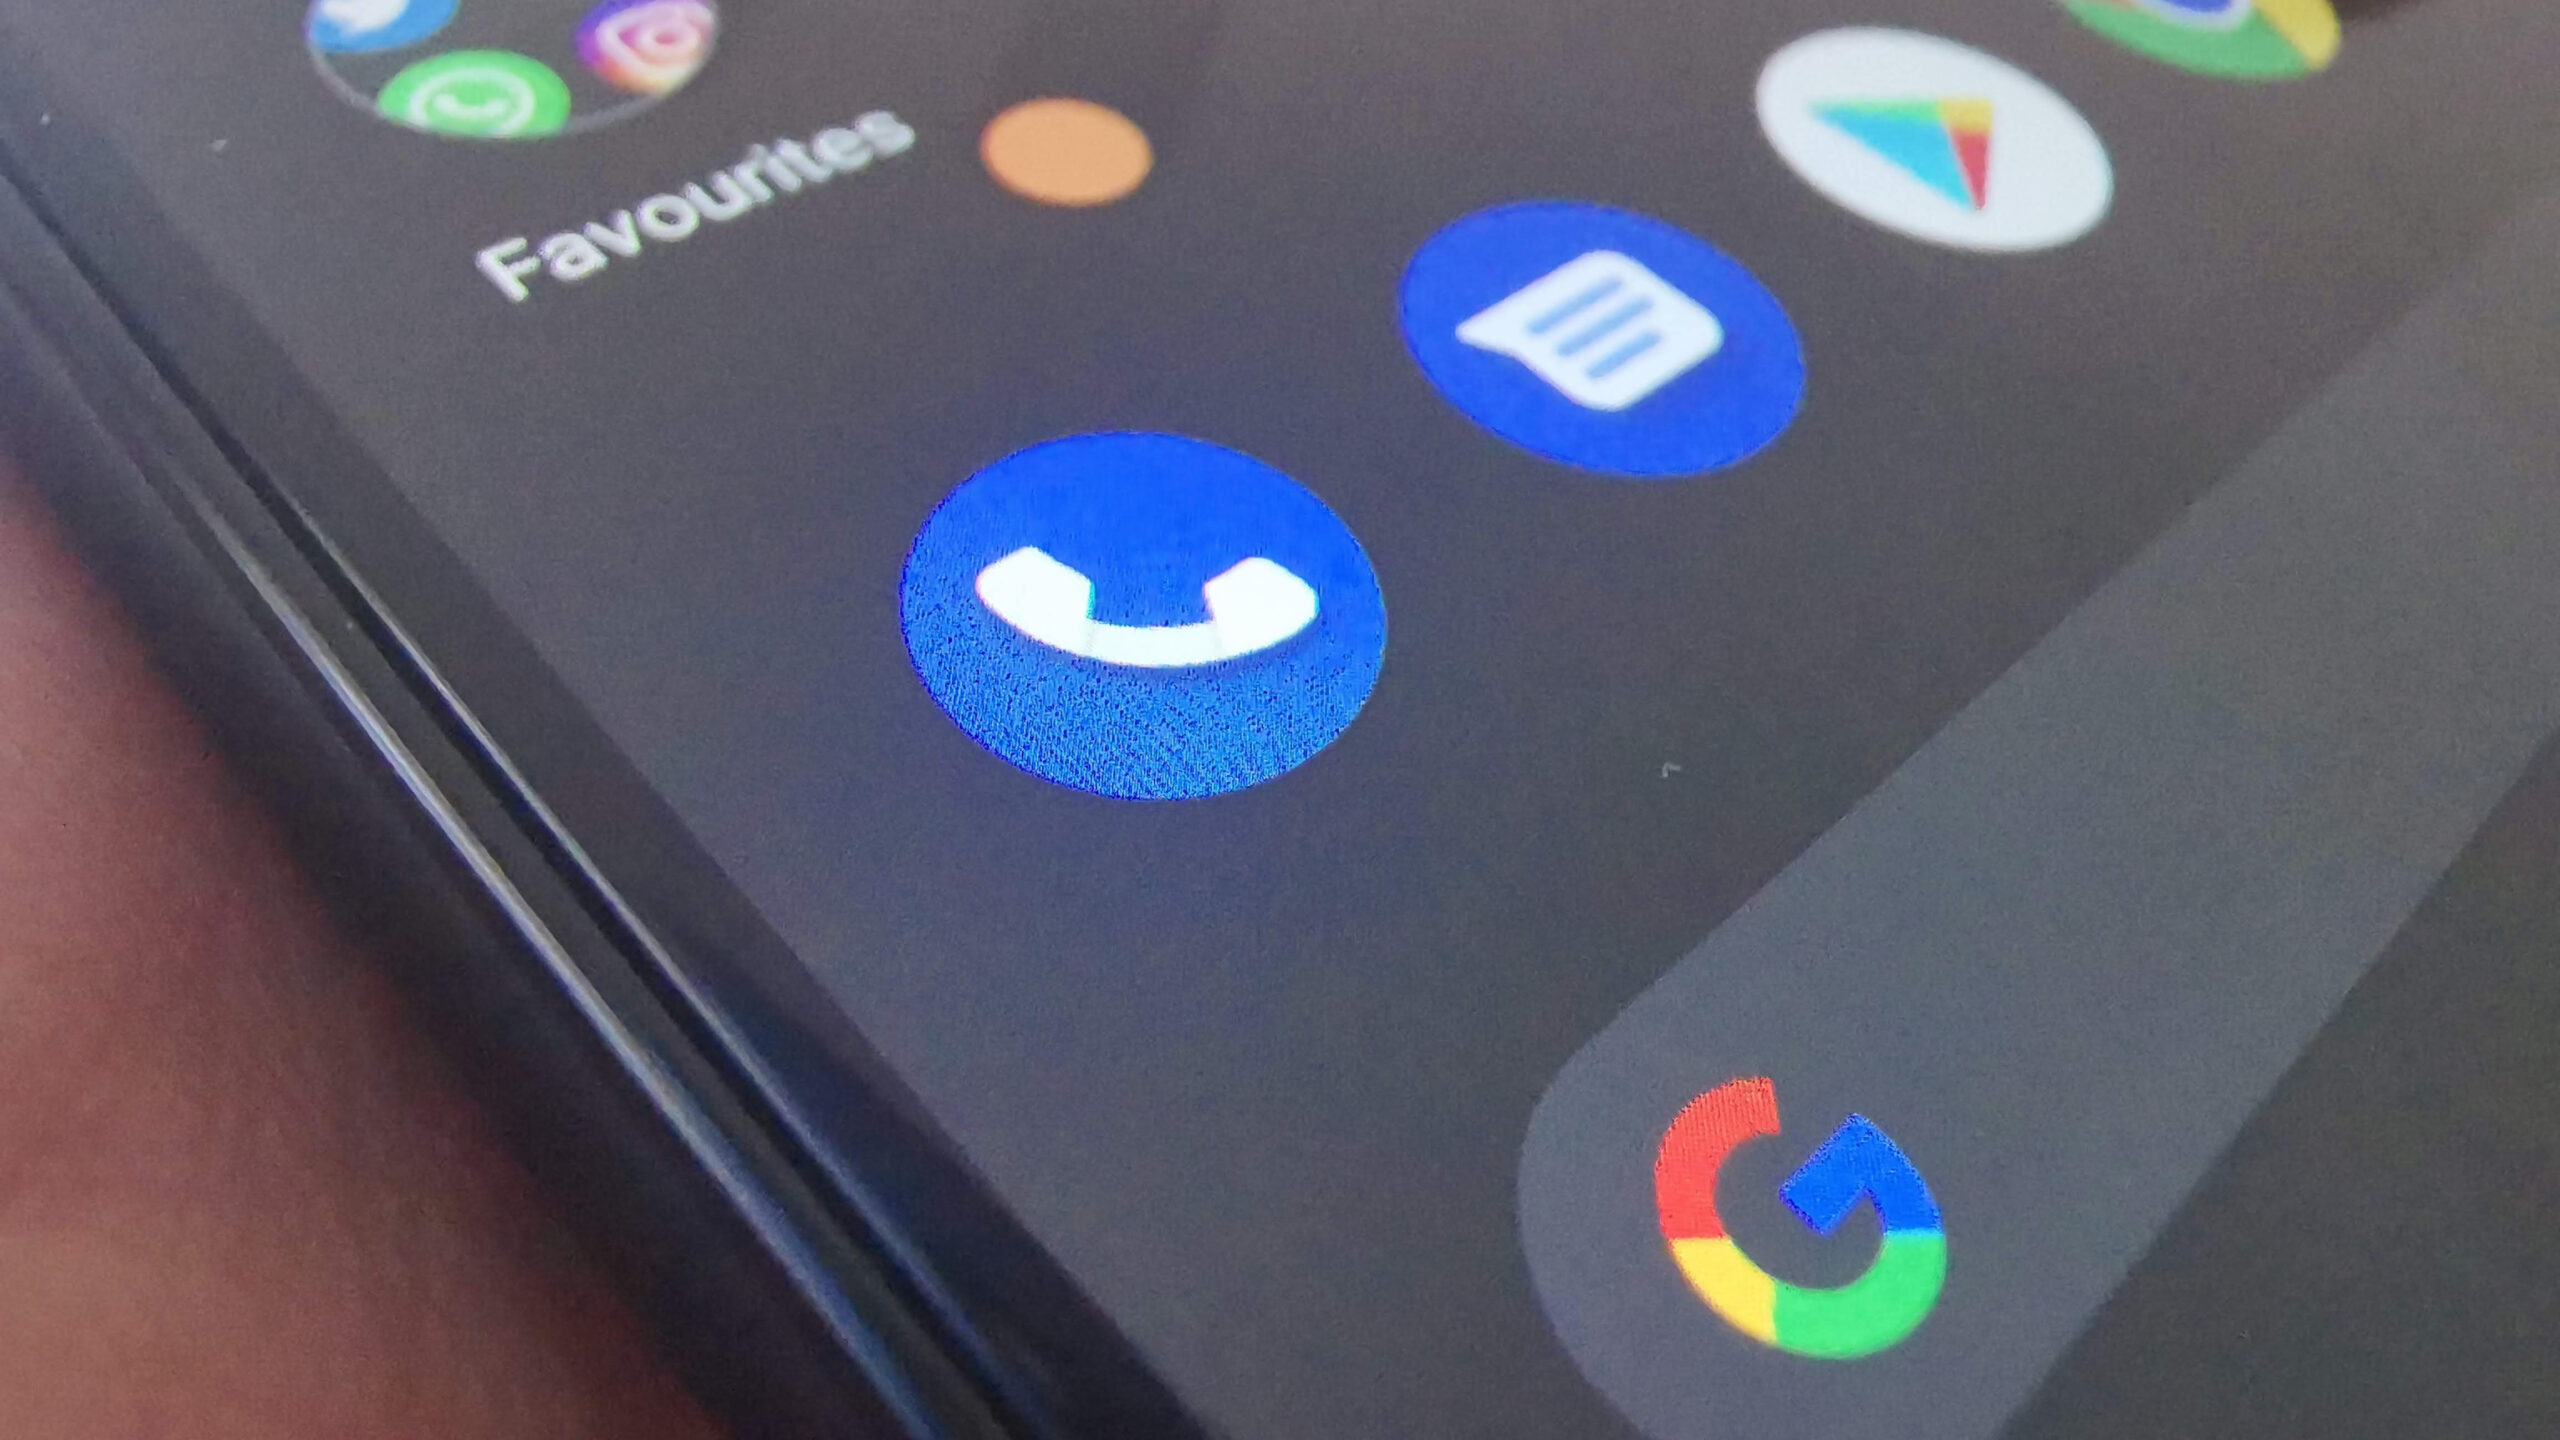 Google a number: aplikacja Google Phone testuje nową funkcję - wyszukiwanie nieznanego numeru